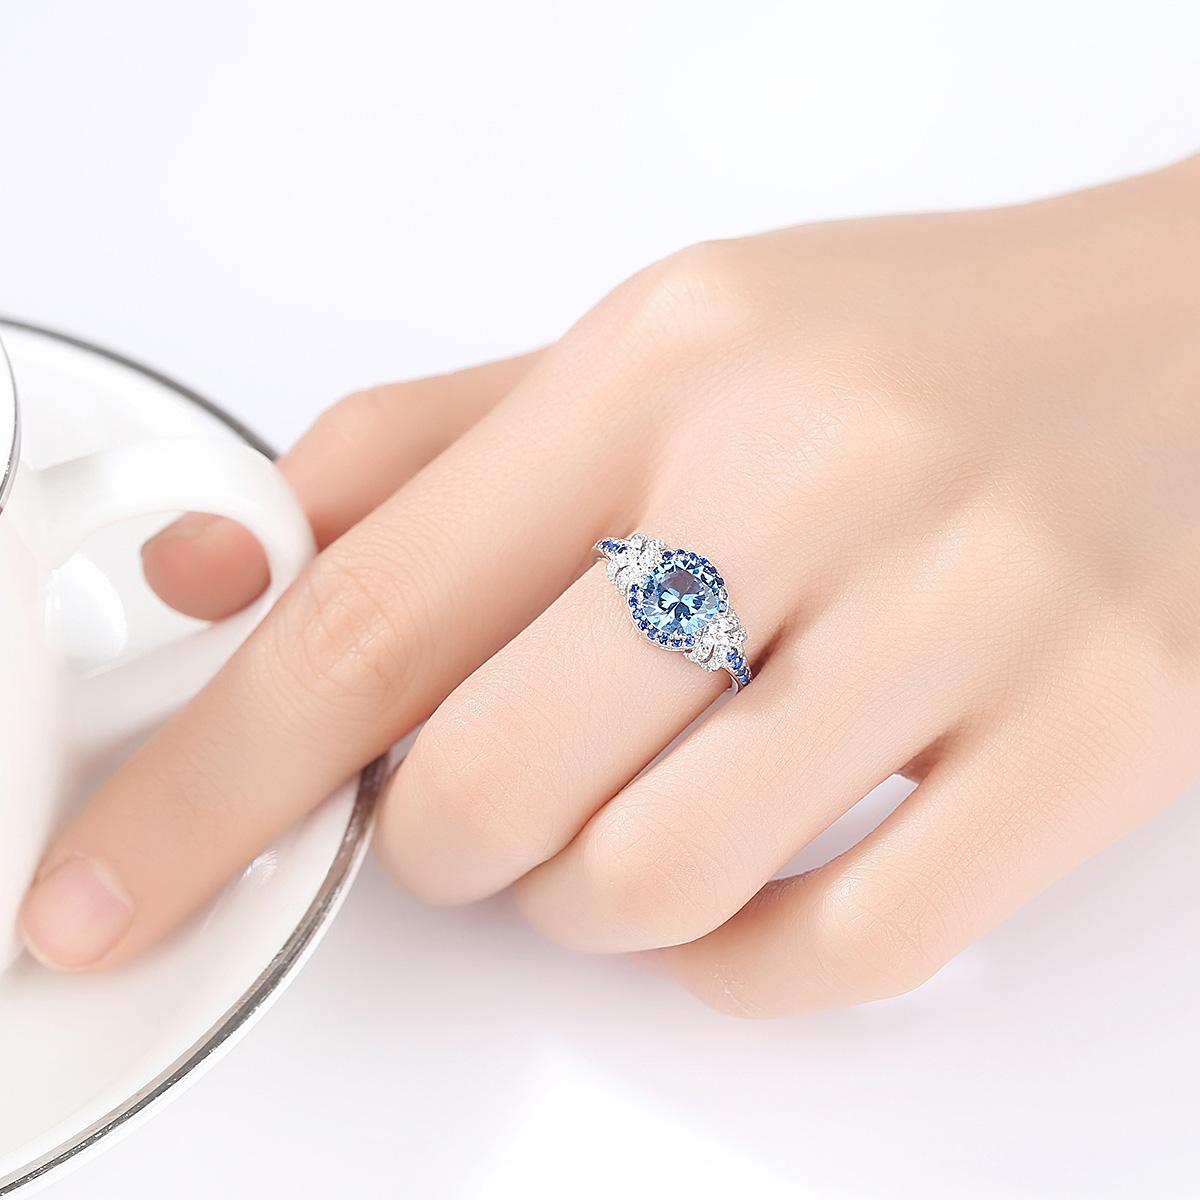 Nhẫn nữ bạc thật S925 thời trang cao cấp N2371-Bảo Ngọc Jewelry